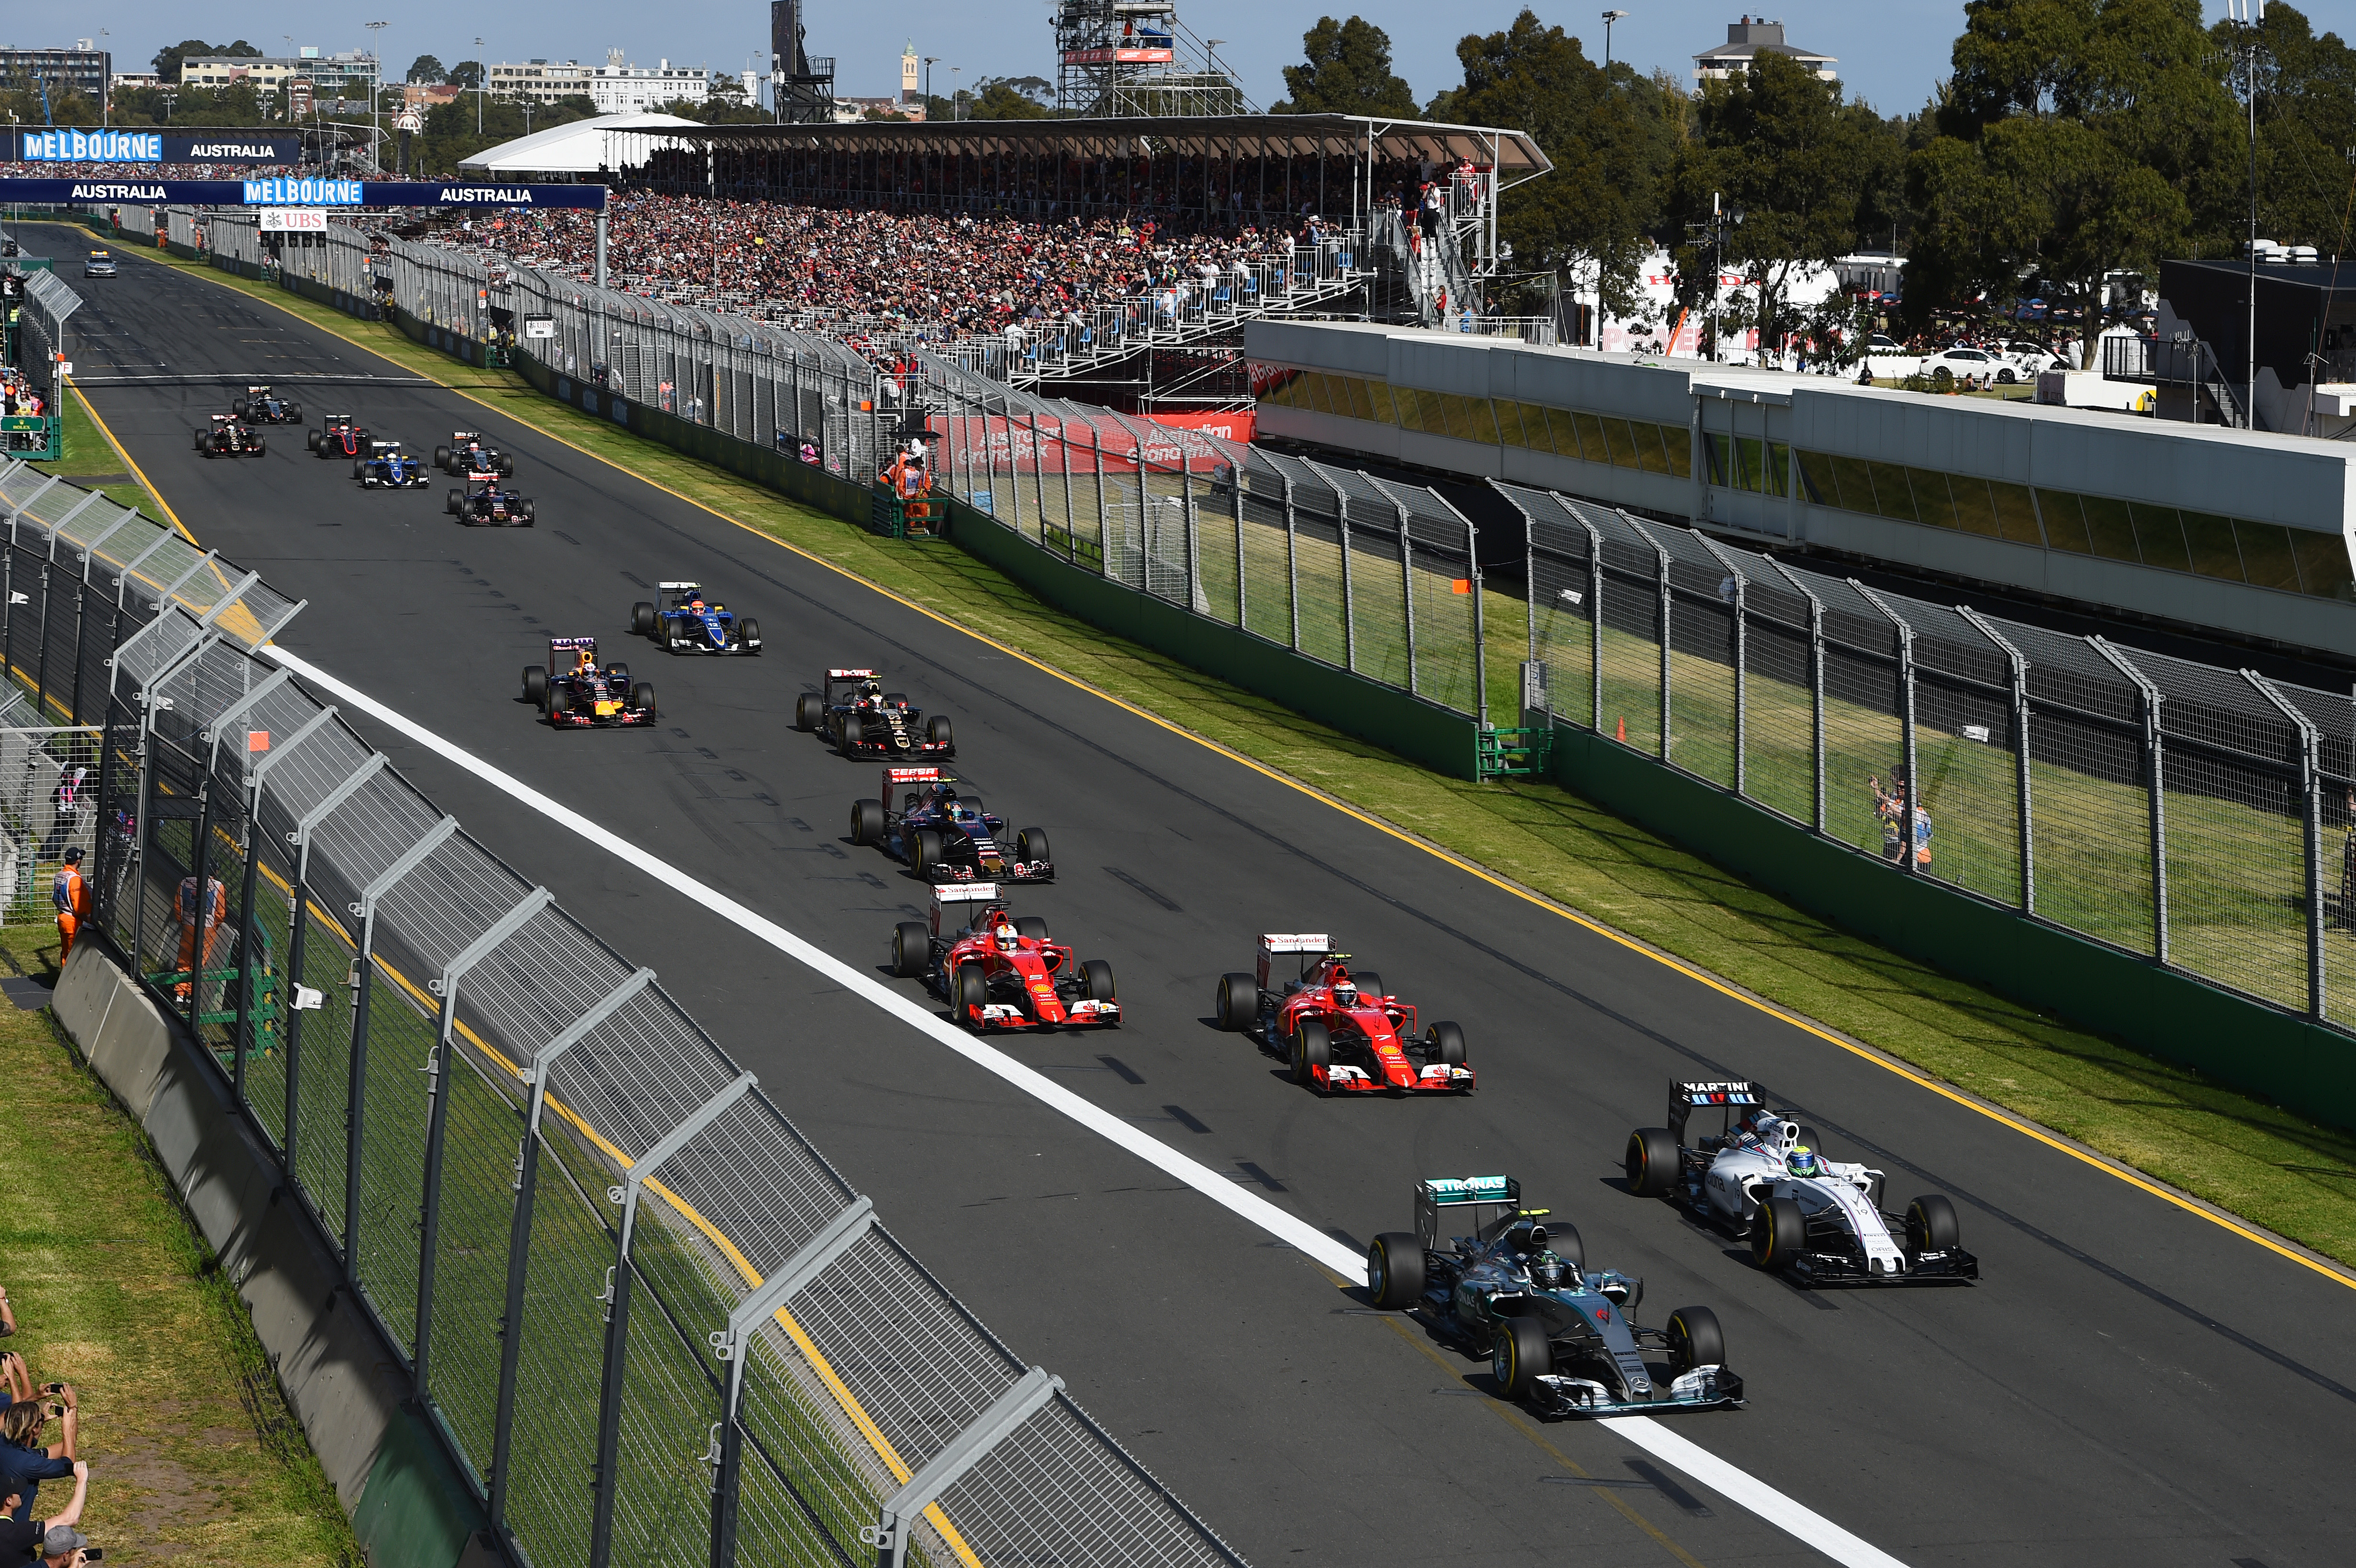 GP Australië 2016 twee weken naar voren gehaald